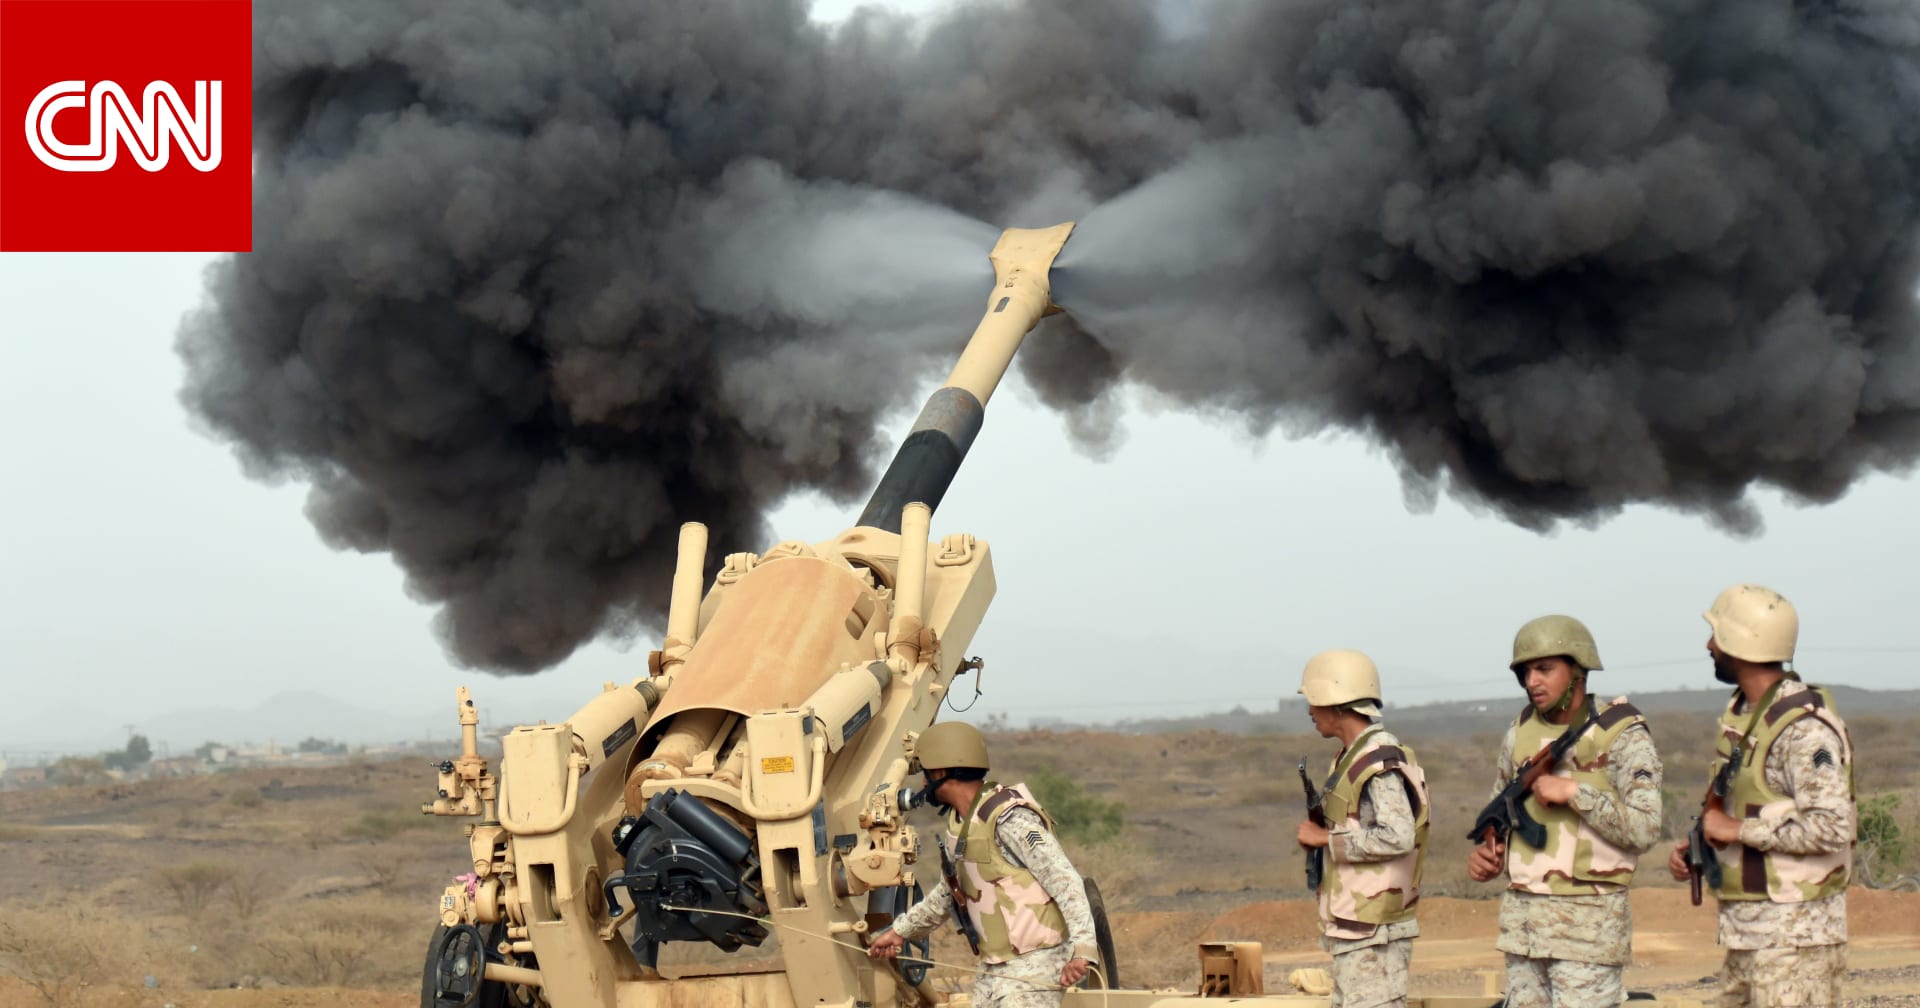 ولي العهد السعودي عن إنهاء حرب اليمن: إذا كنت متشائما يجب أن أترك منصبي - CNN Arabic